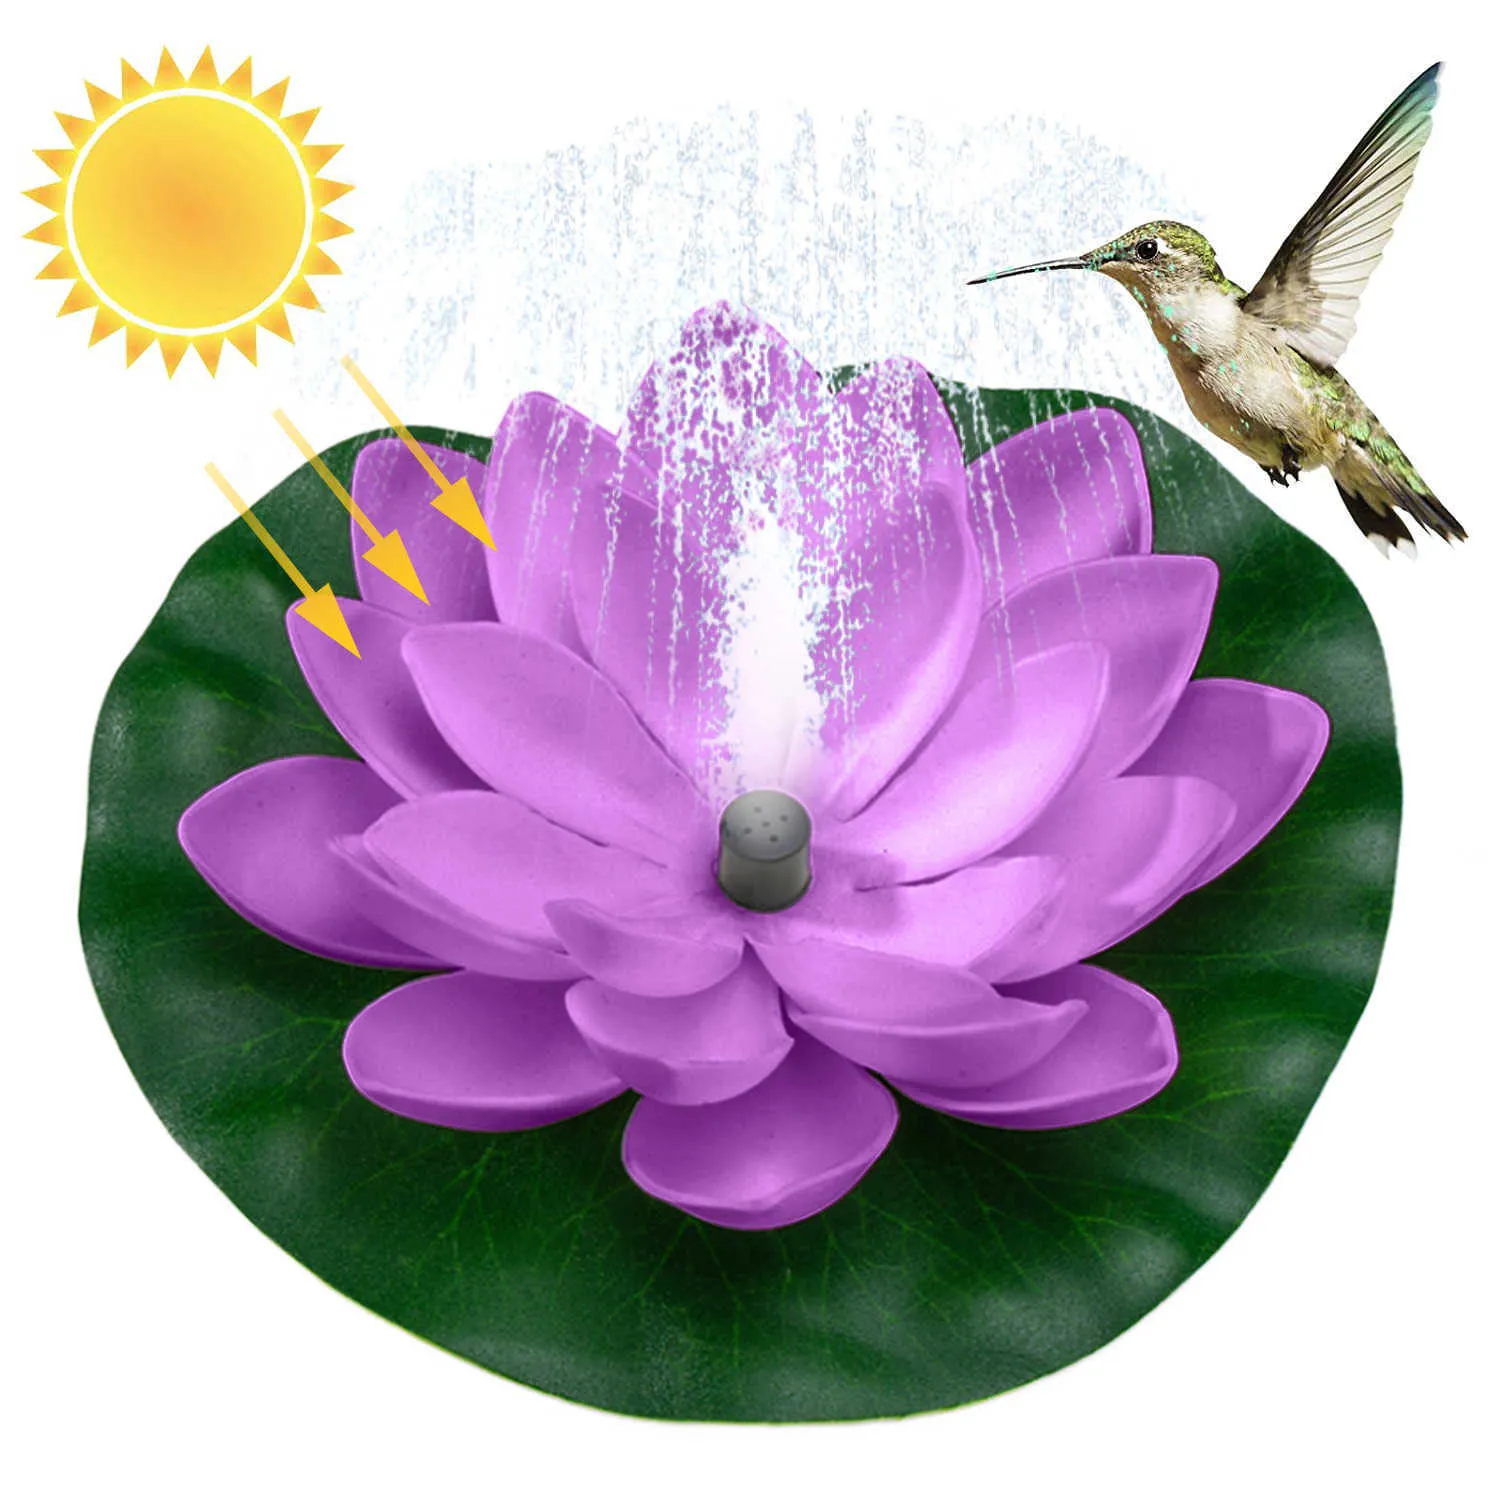 Güneş Çeşmesi Kuş Banyosu, Lotus Waterscape Bahçe, Kuş Banyosu için Yüzer Su Çeşmesi, Balık Tankı, Havuz, Bahçe Dekorasyon Tuin Y0914